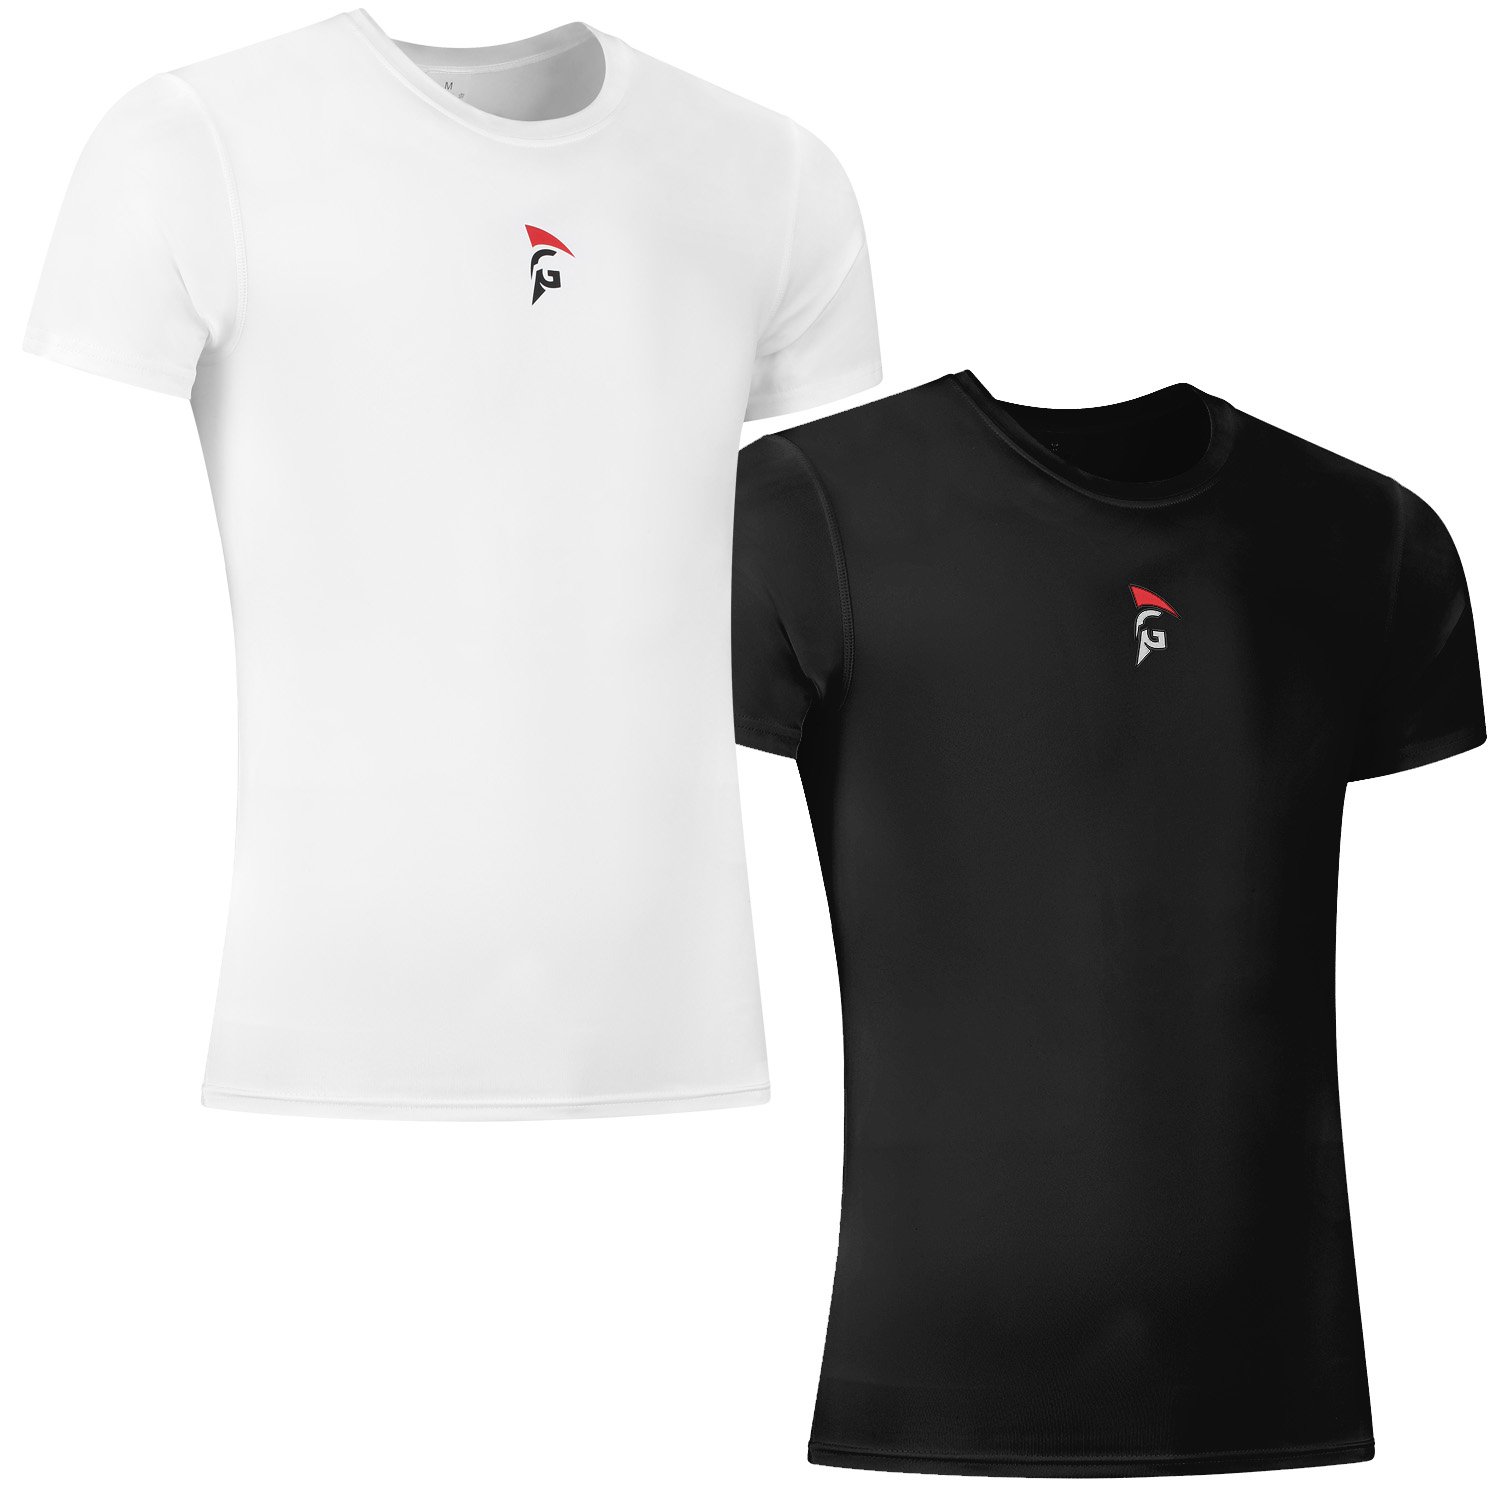 Gladiator Sports Kompressionsshirt – Herren (schwarz und weiß)